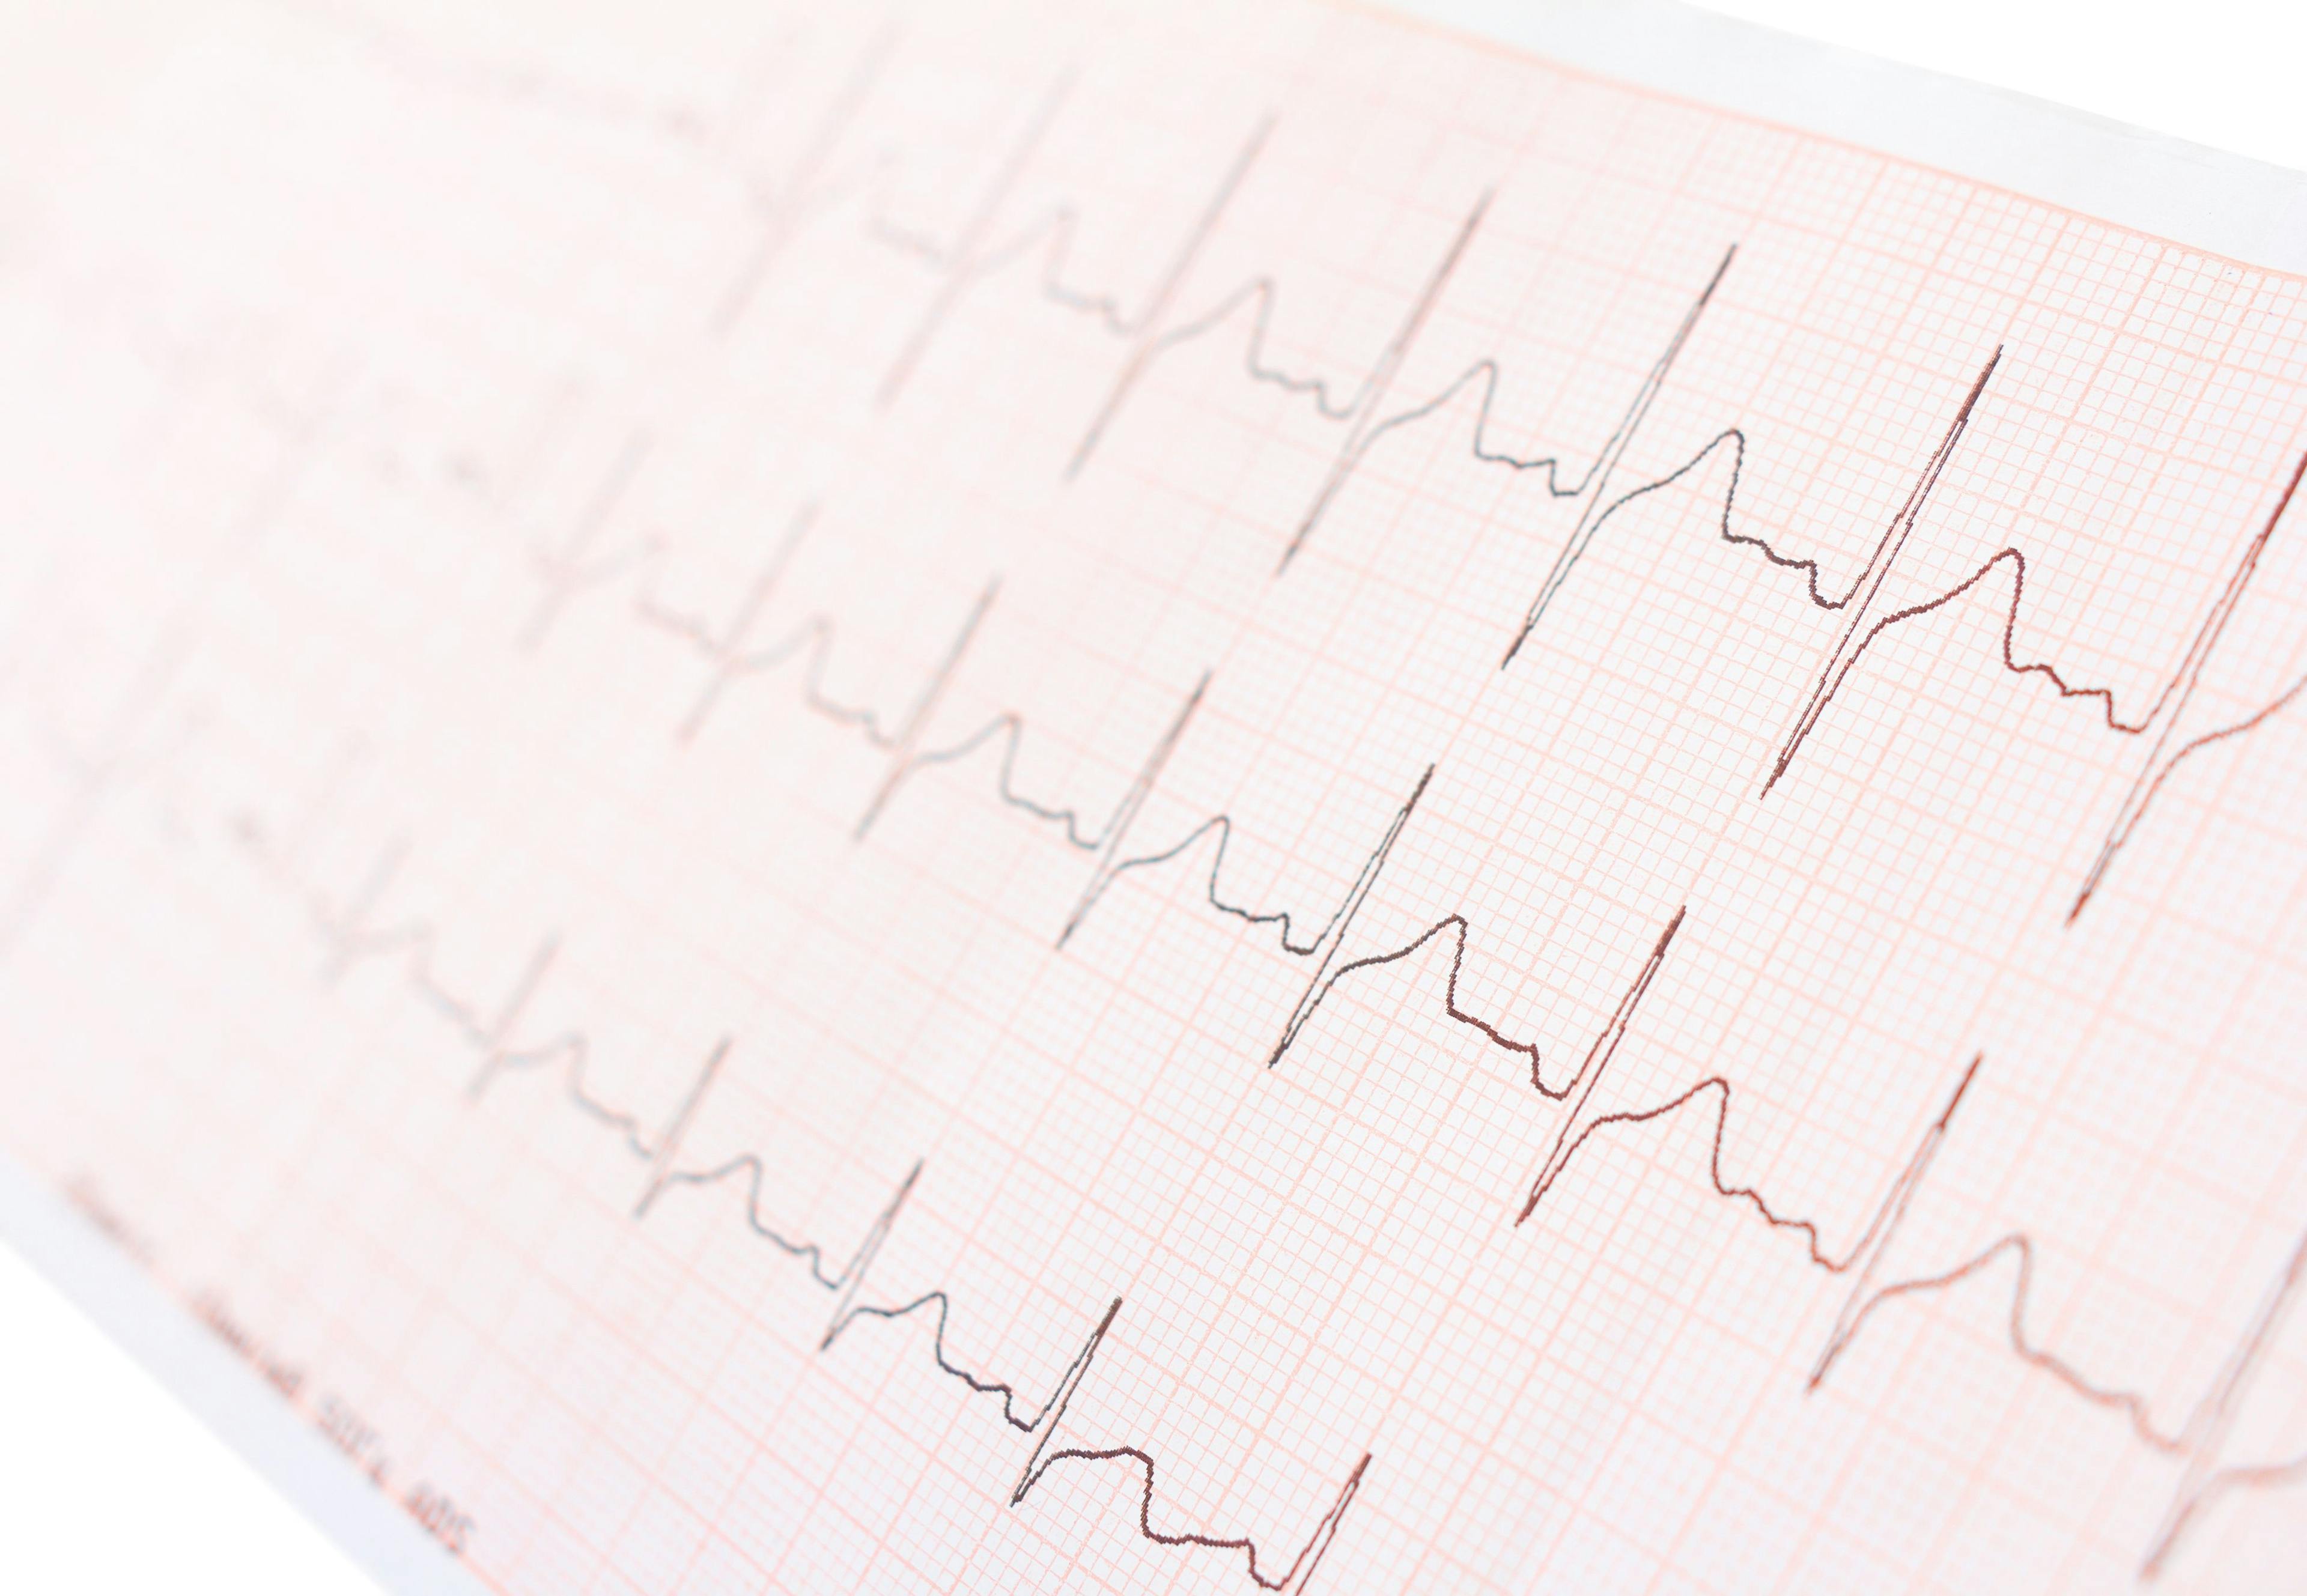 EKG displaying a normal heart rhythm